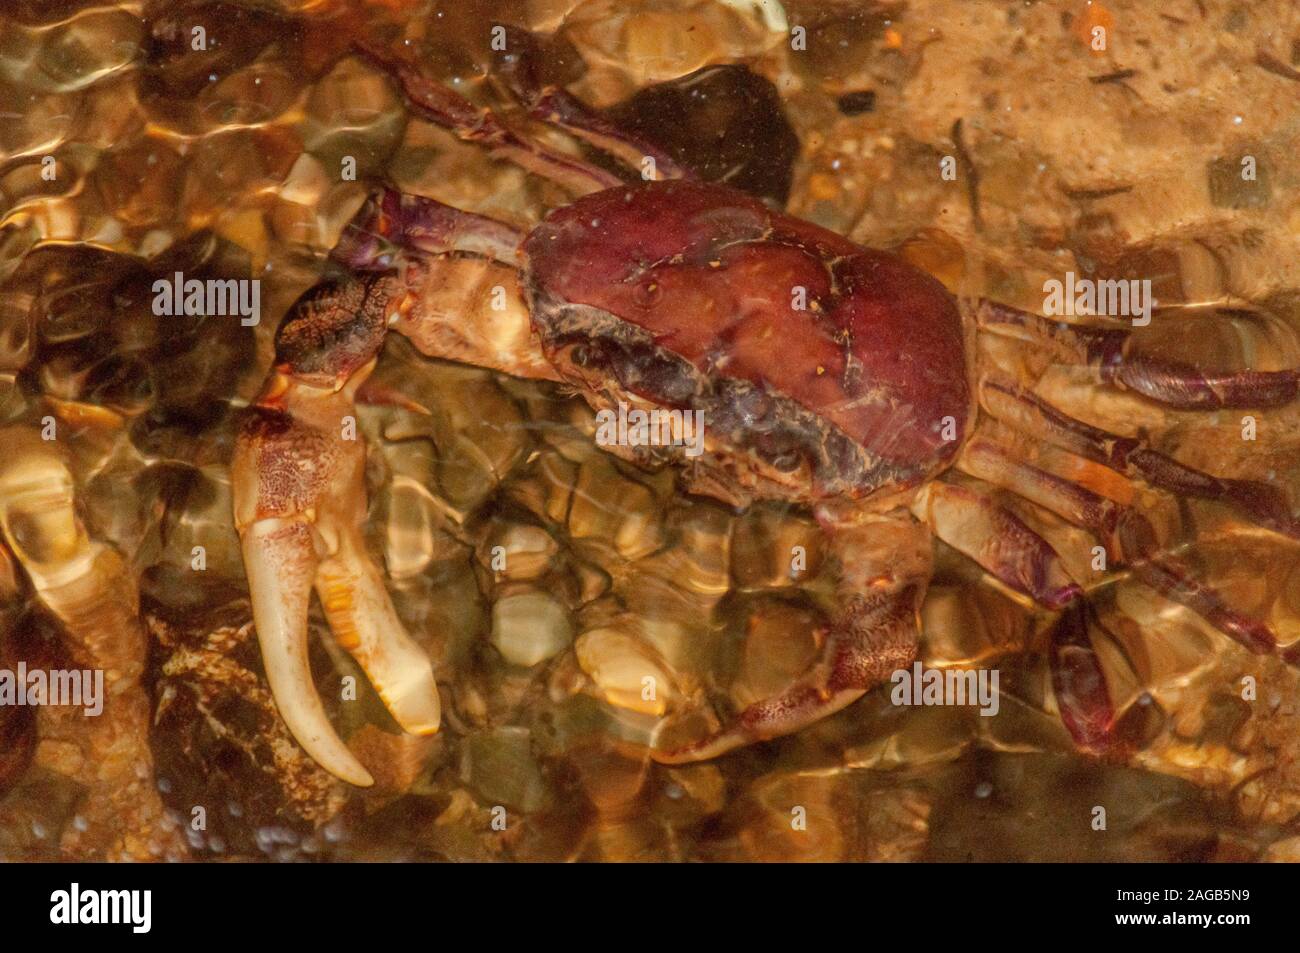 Colpo di closeup di un granchio sotto l'acqua limpida - grande per un articolo sulla vita subacquea unica Foto Stock